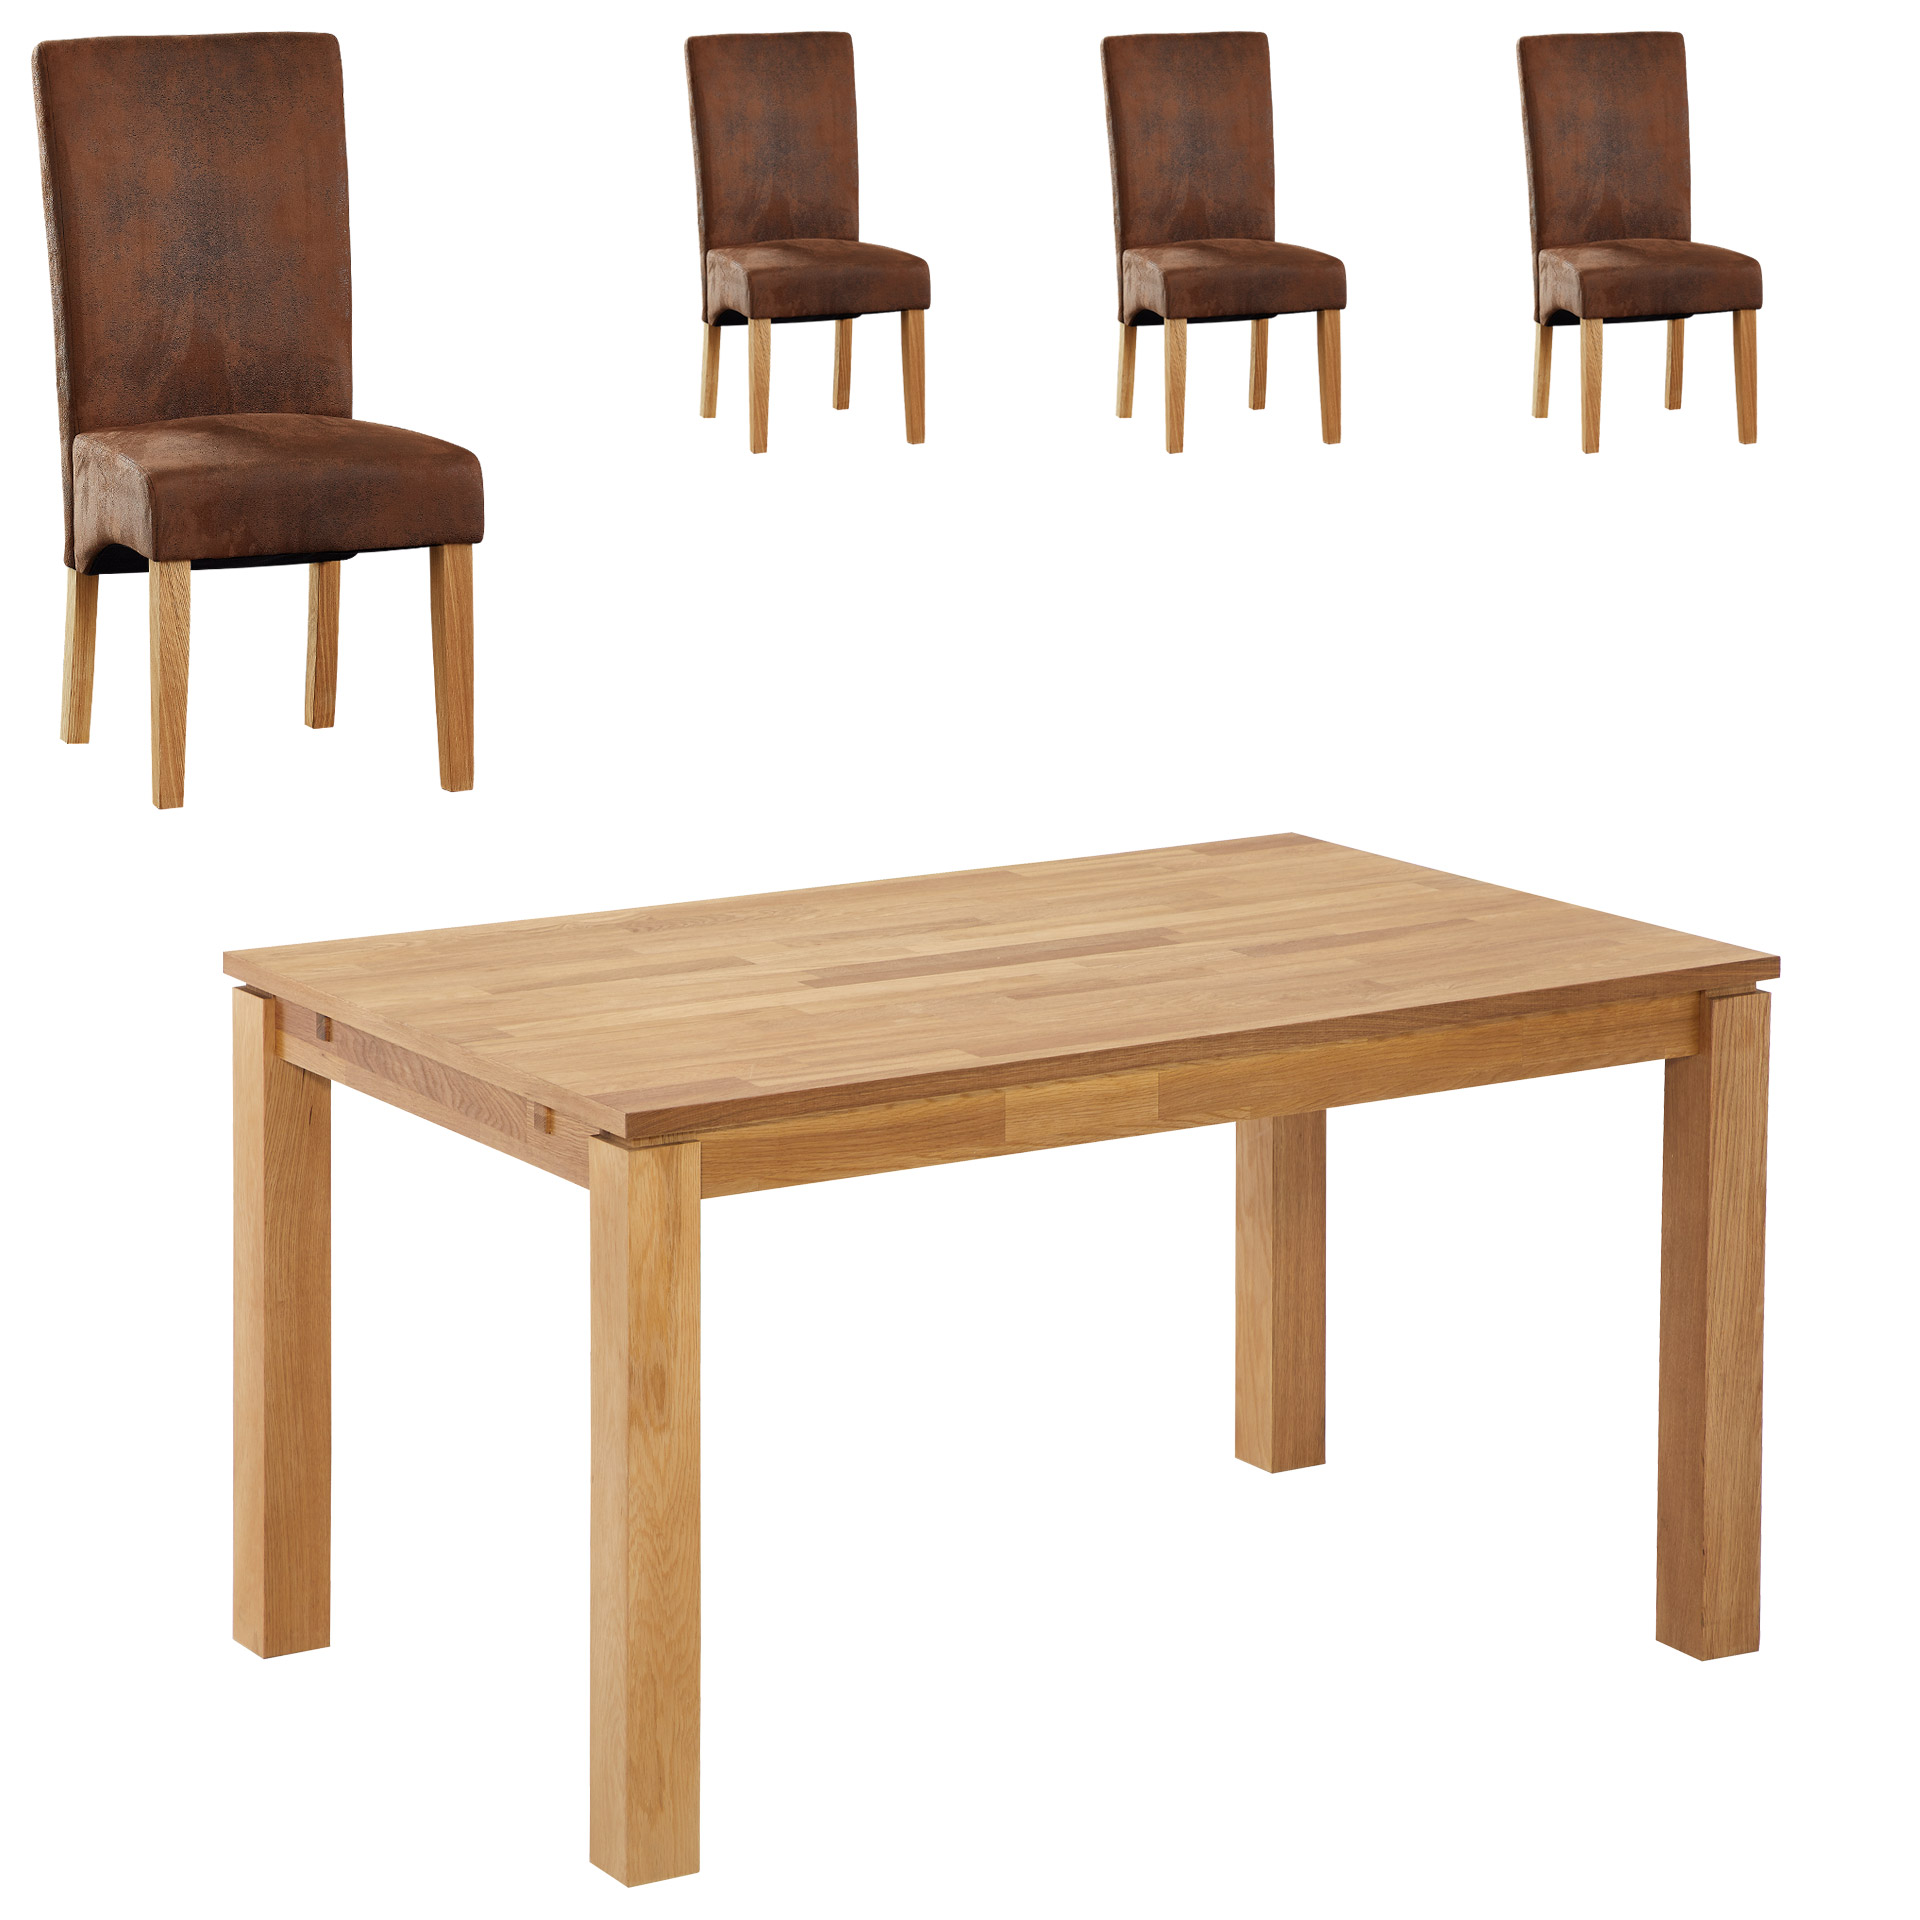 Essgruppe Royal Borg/Tom (90x140, 4 Stühle, antikbraun)